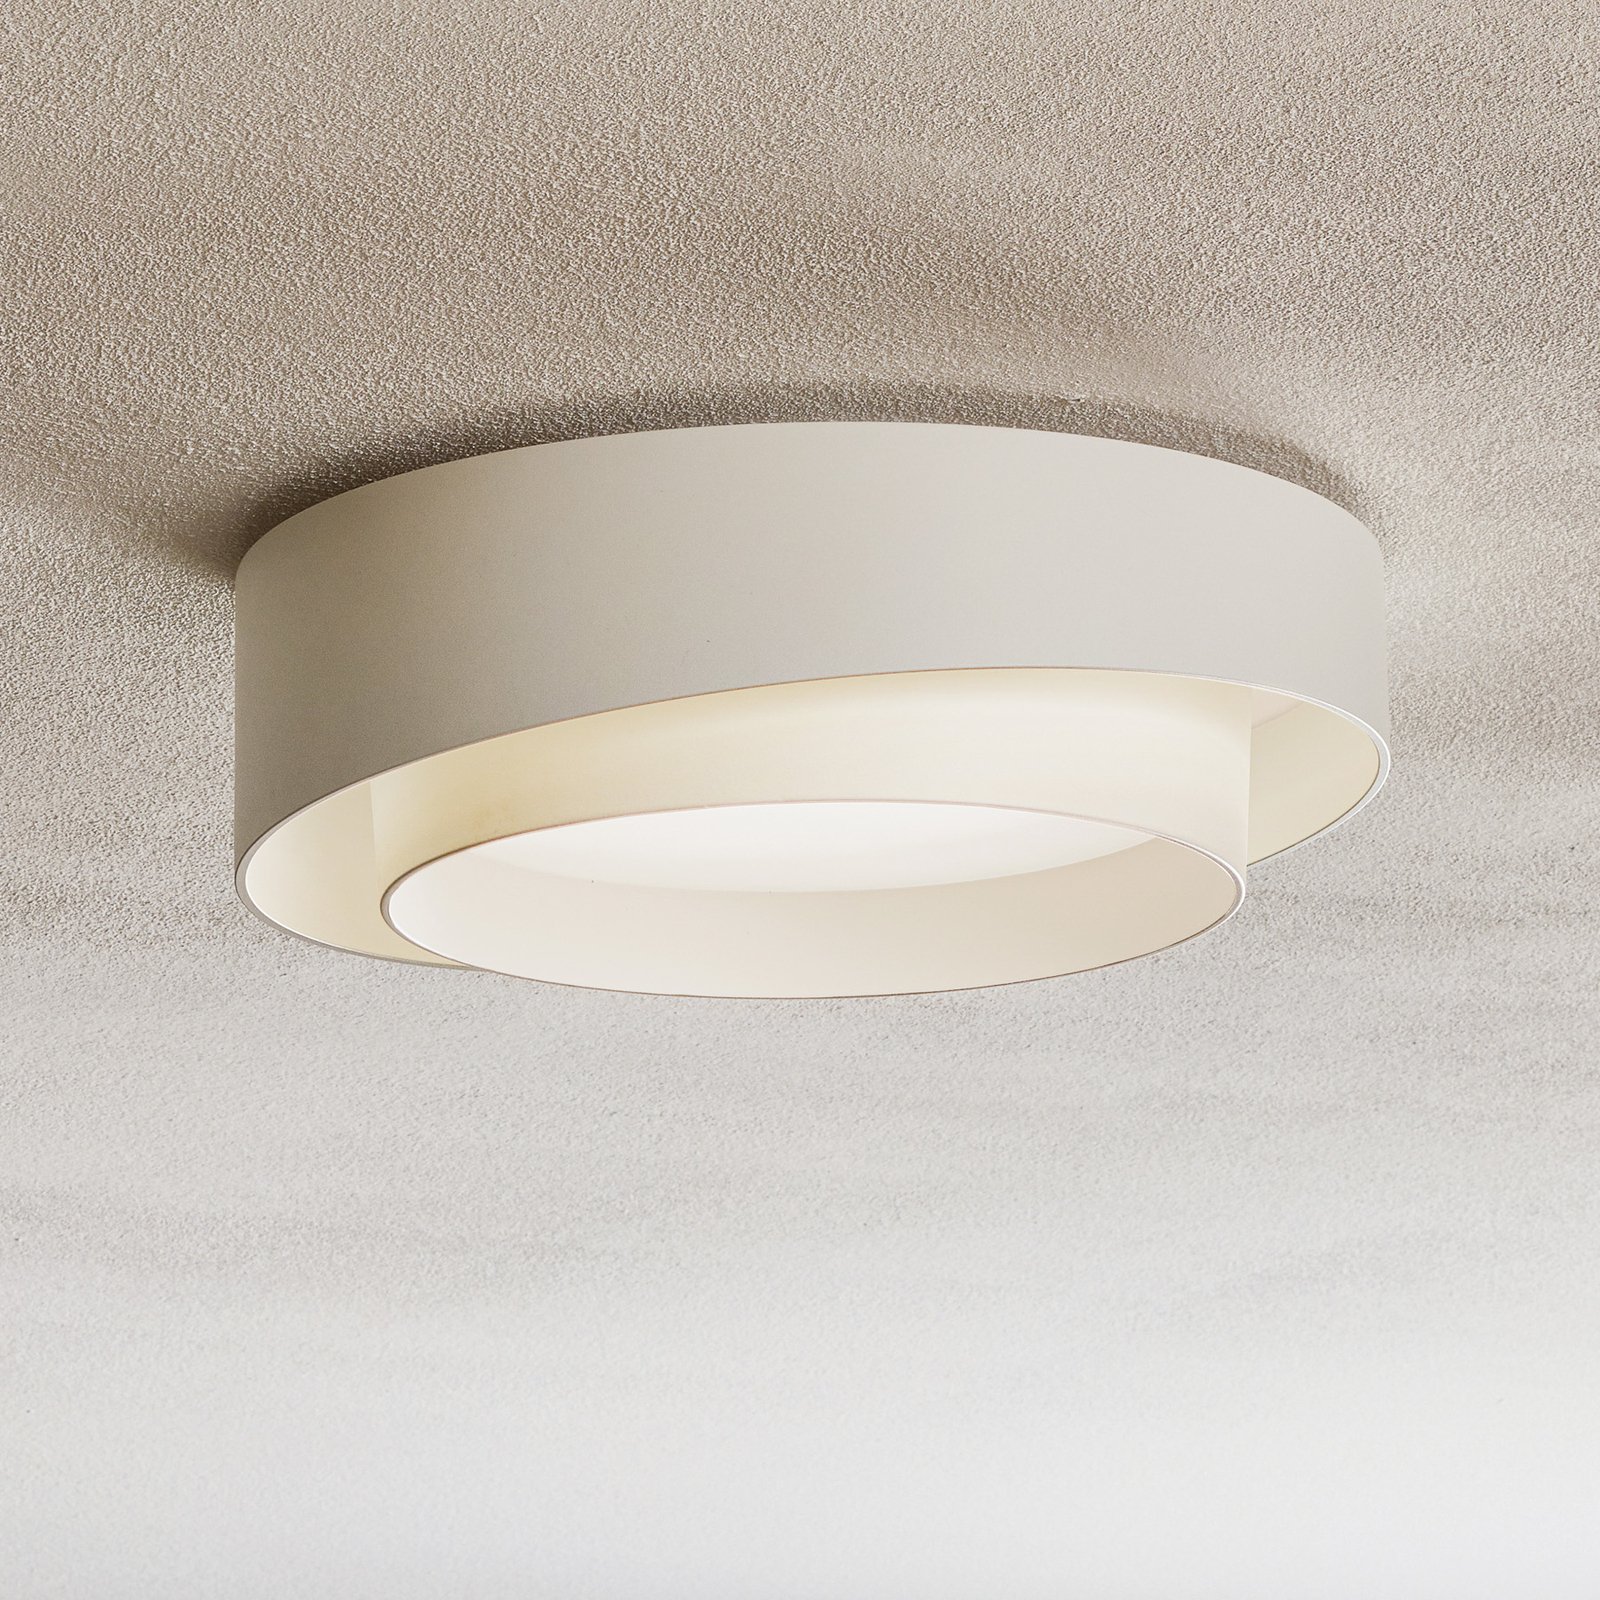 Vervolgen Opsplitsen Guinness Witte led ontwerp plafondlamp Centric | Lampen24.be